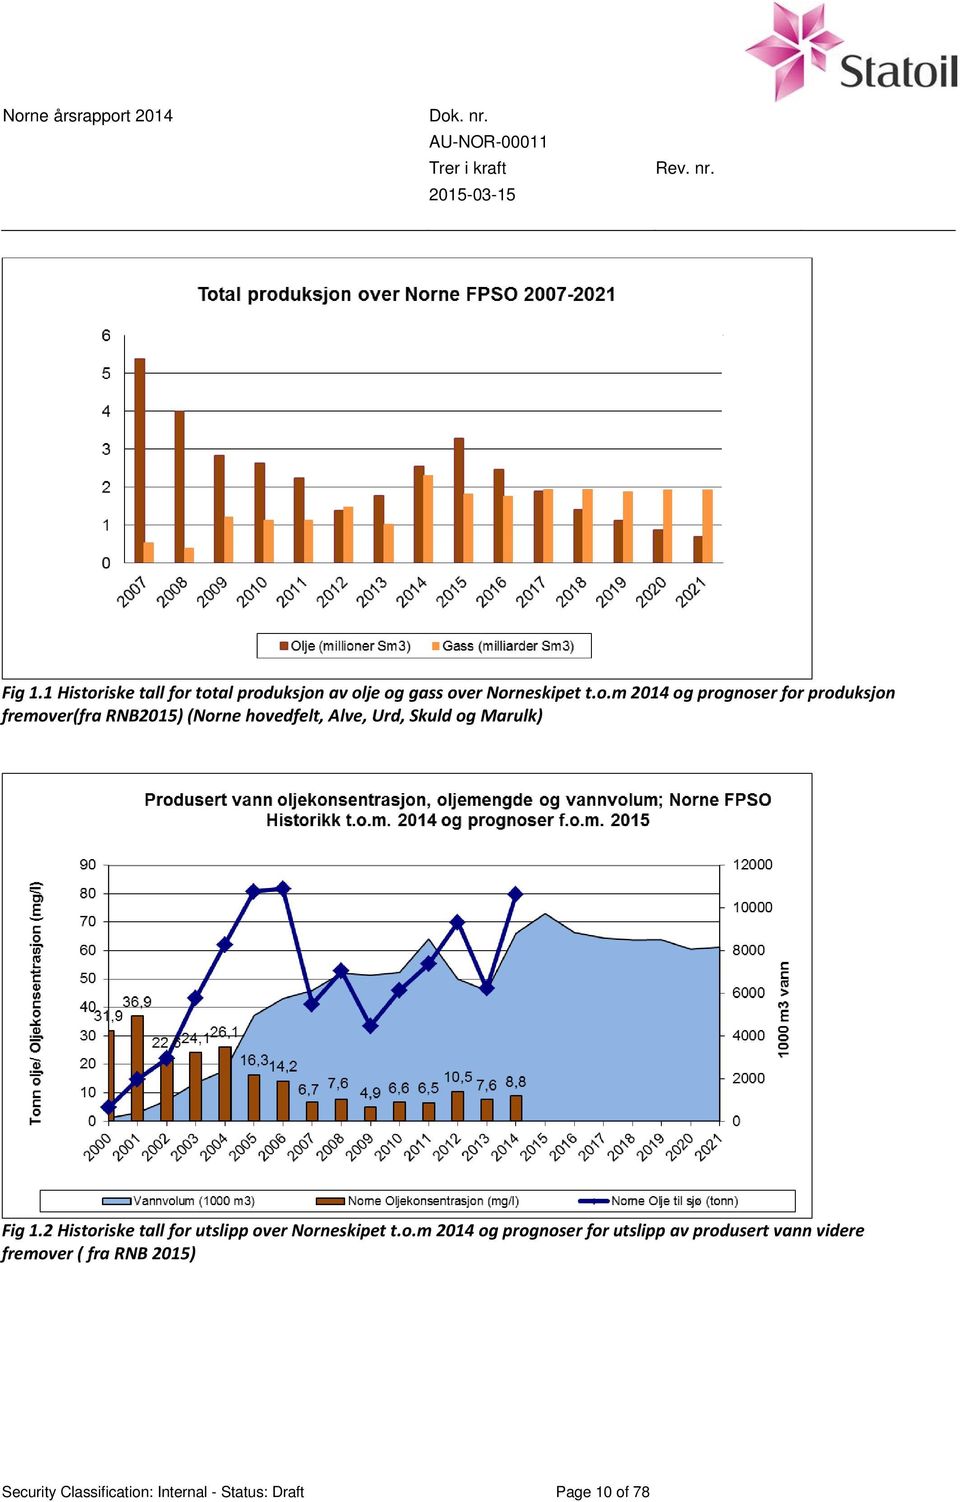 total produksjon av olje og gass over Norneskipet t.o.m 2014 og prognoser for produksjon